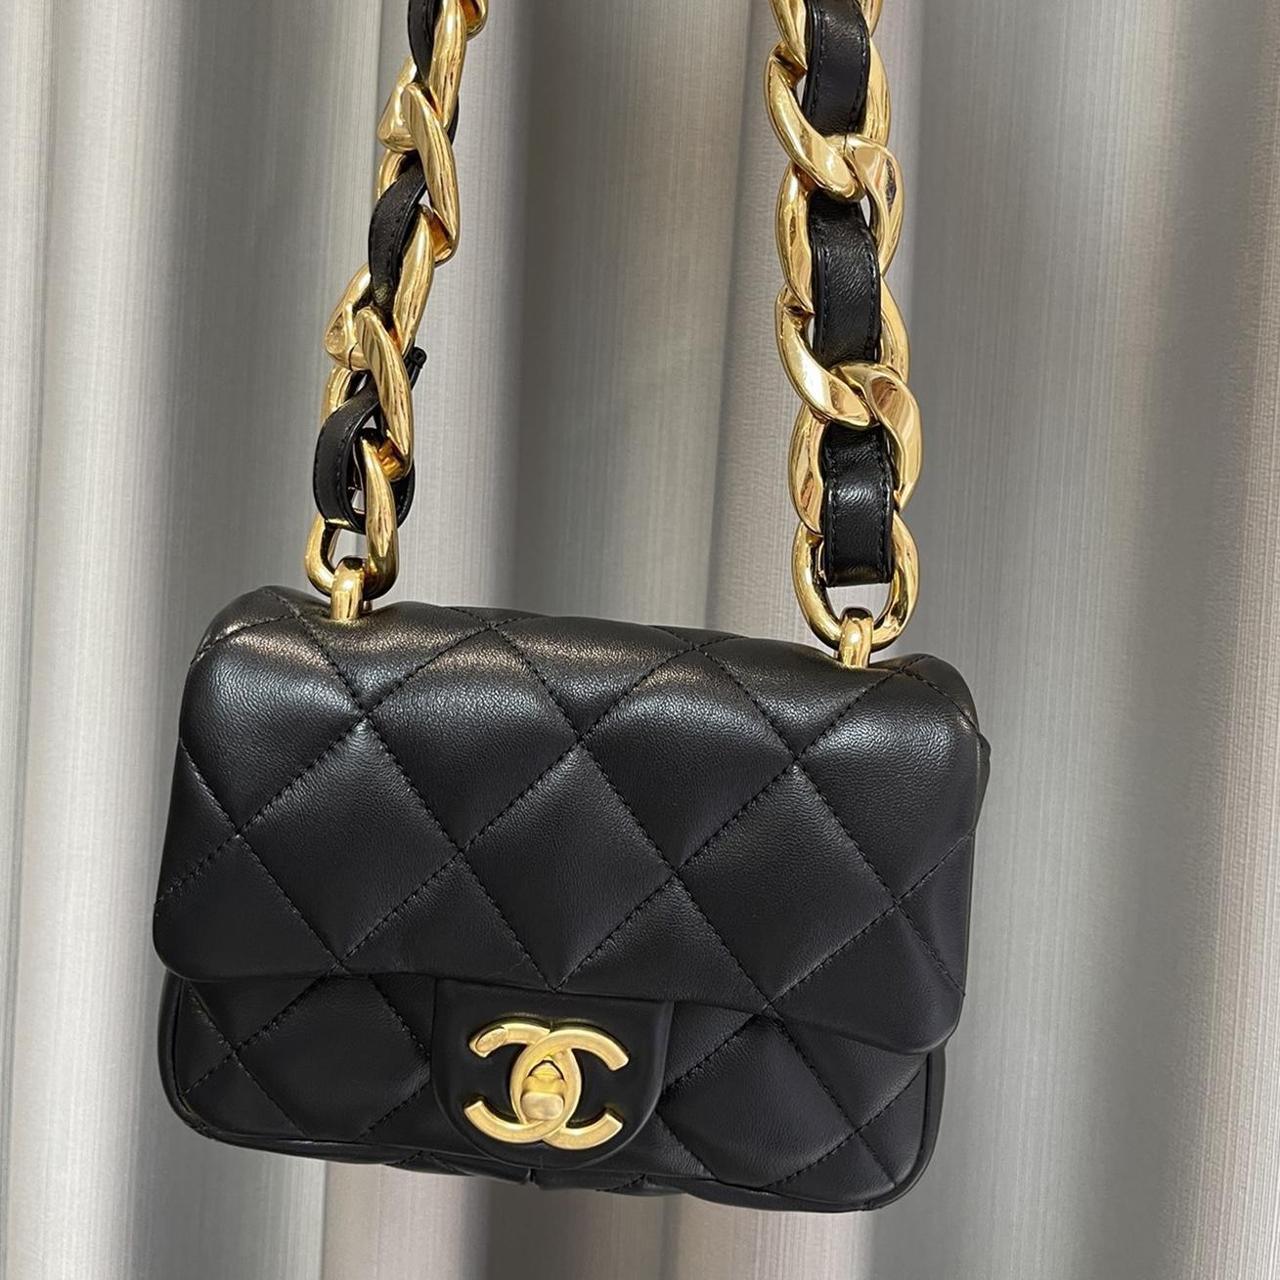 Chanel bag-mini - Depop